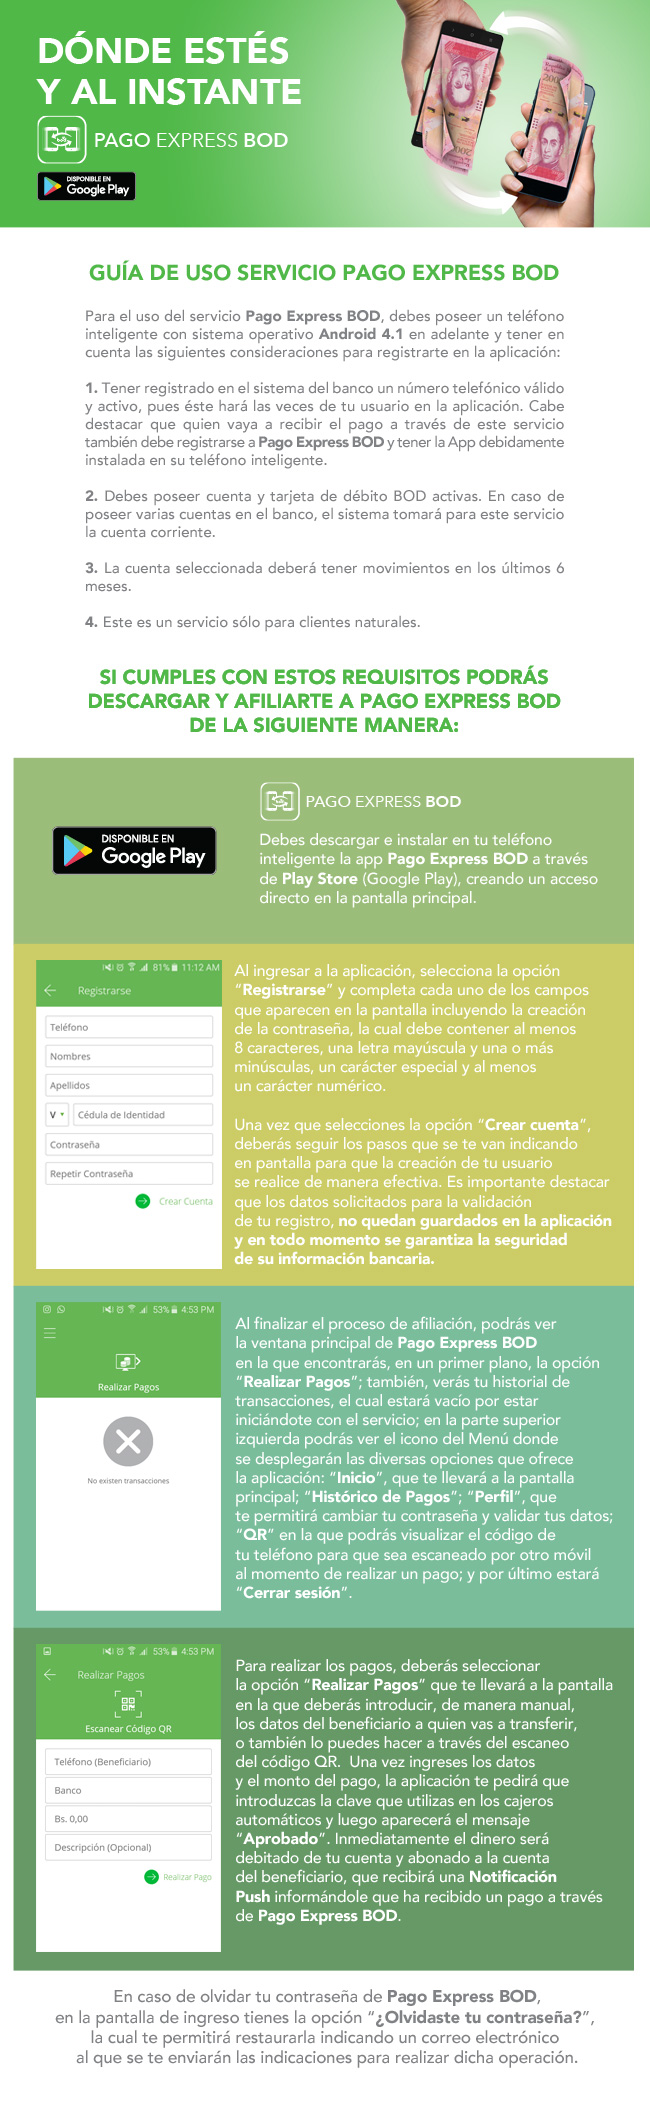 BOD lanza su aplicación para pagos con celular